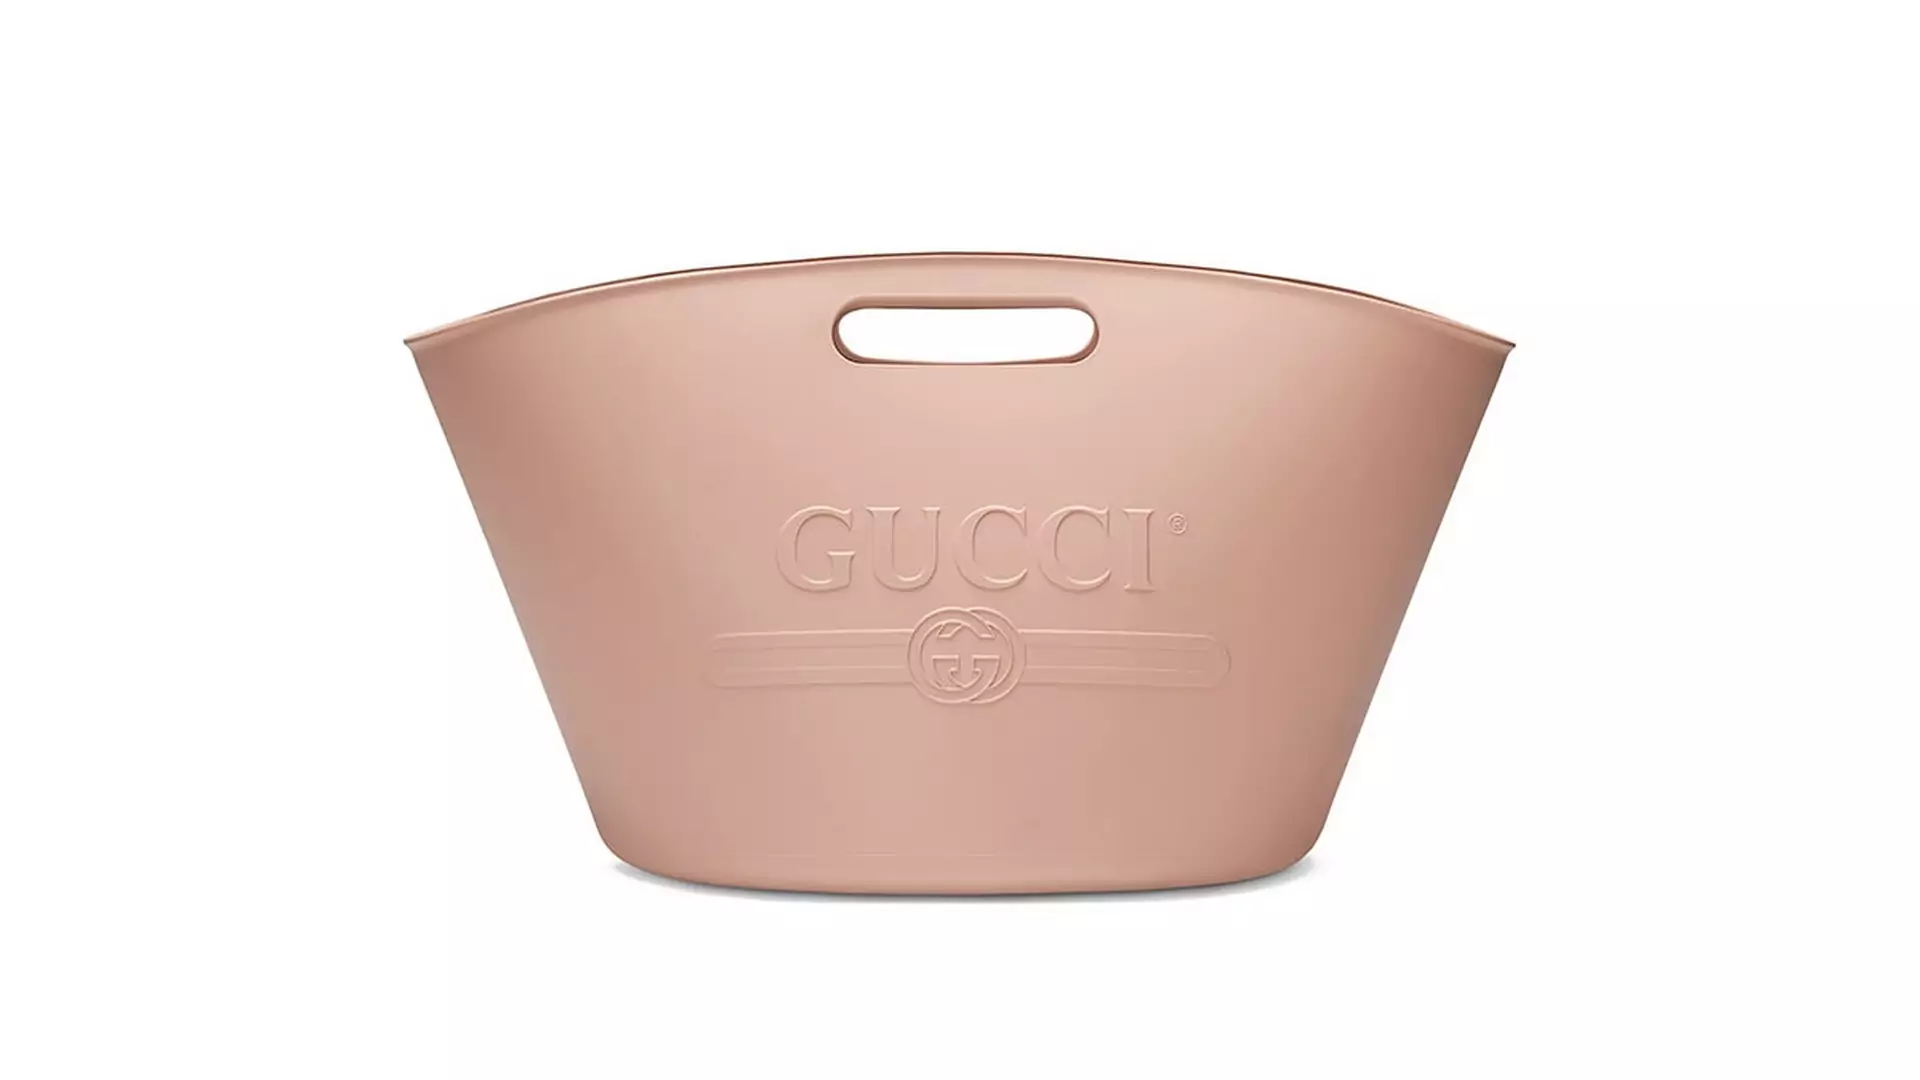 Gucci szaleje z gadżetami. W nowej kolekcji pojawił się pojemnik na lód